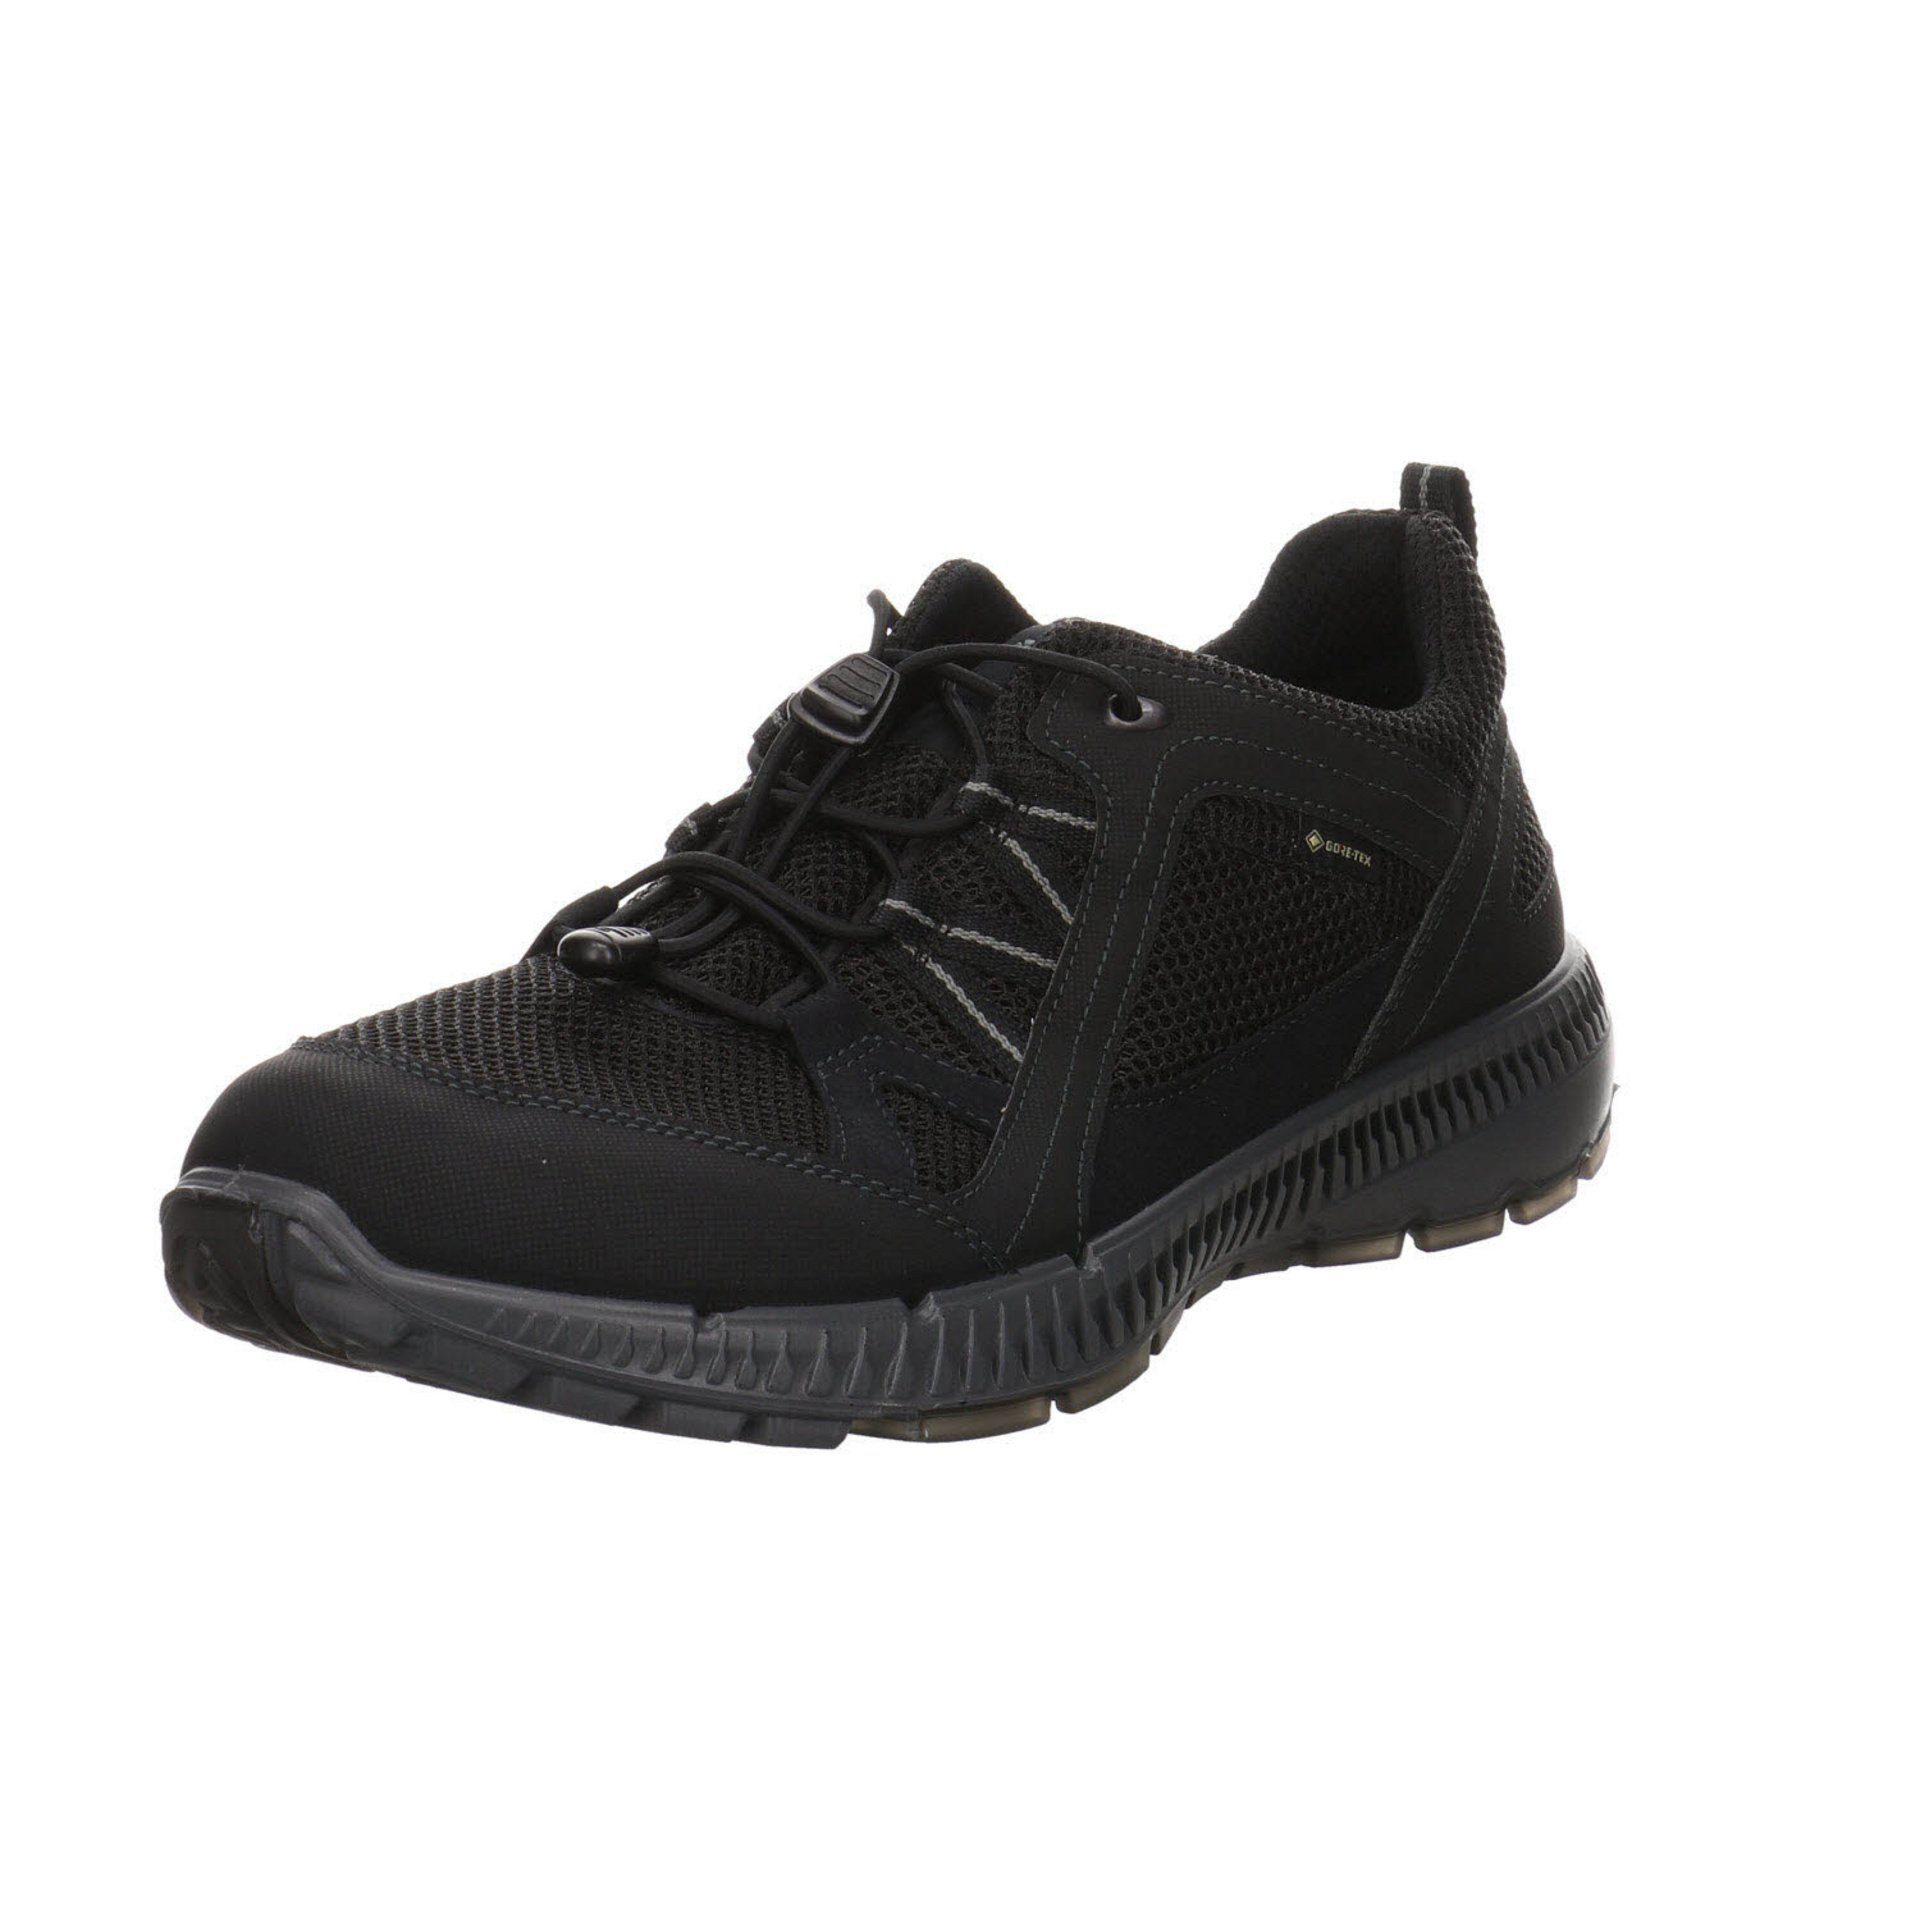 Ecco Herren Outdoor Schuhe Terracruise GTX Outdoorschuh Outdoorschuh Synthetikkombination schwarz dunkel